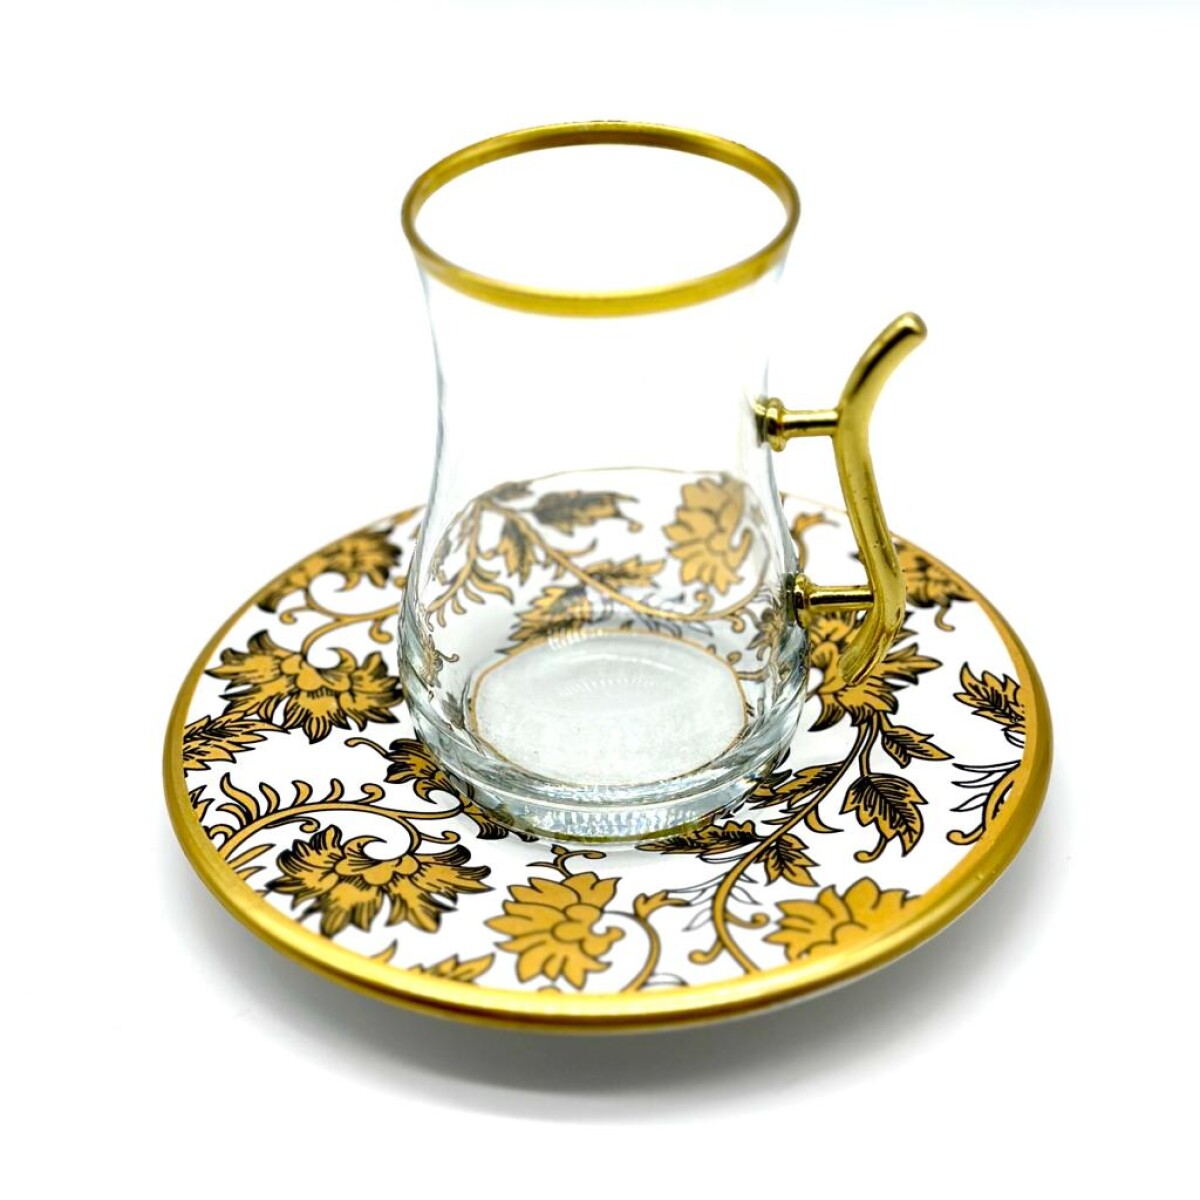 Vaso de té vip plato de cerámica x1 - Blanco y dorado 